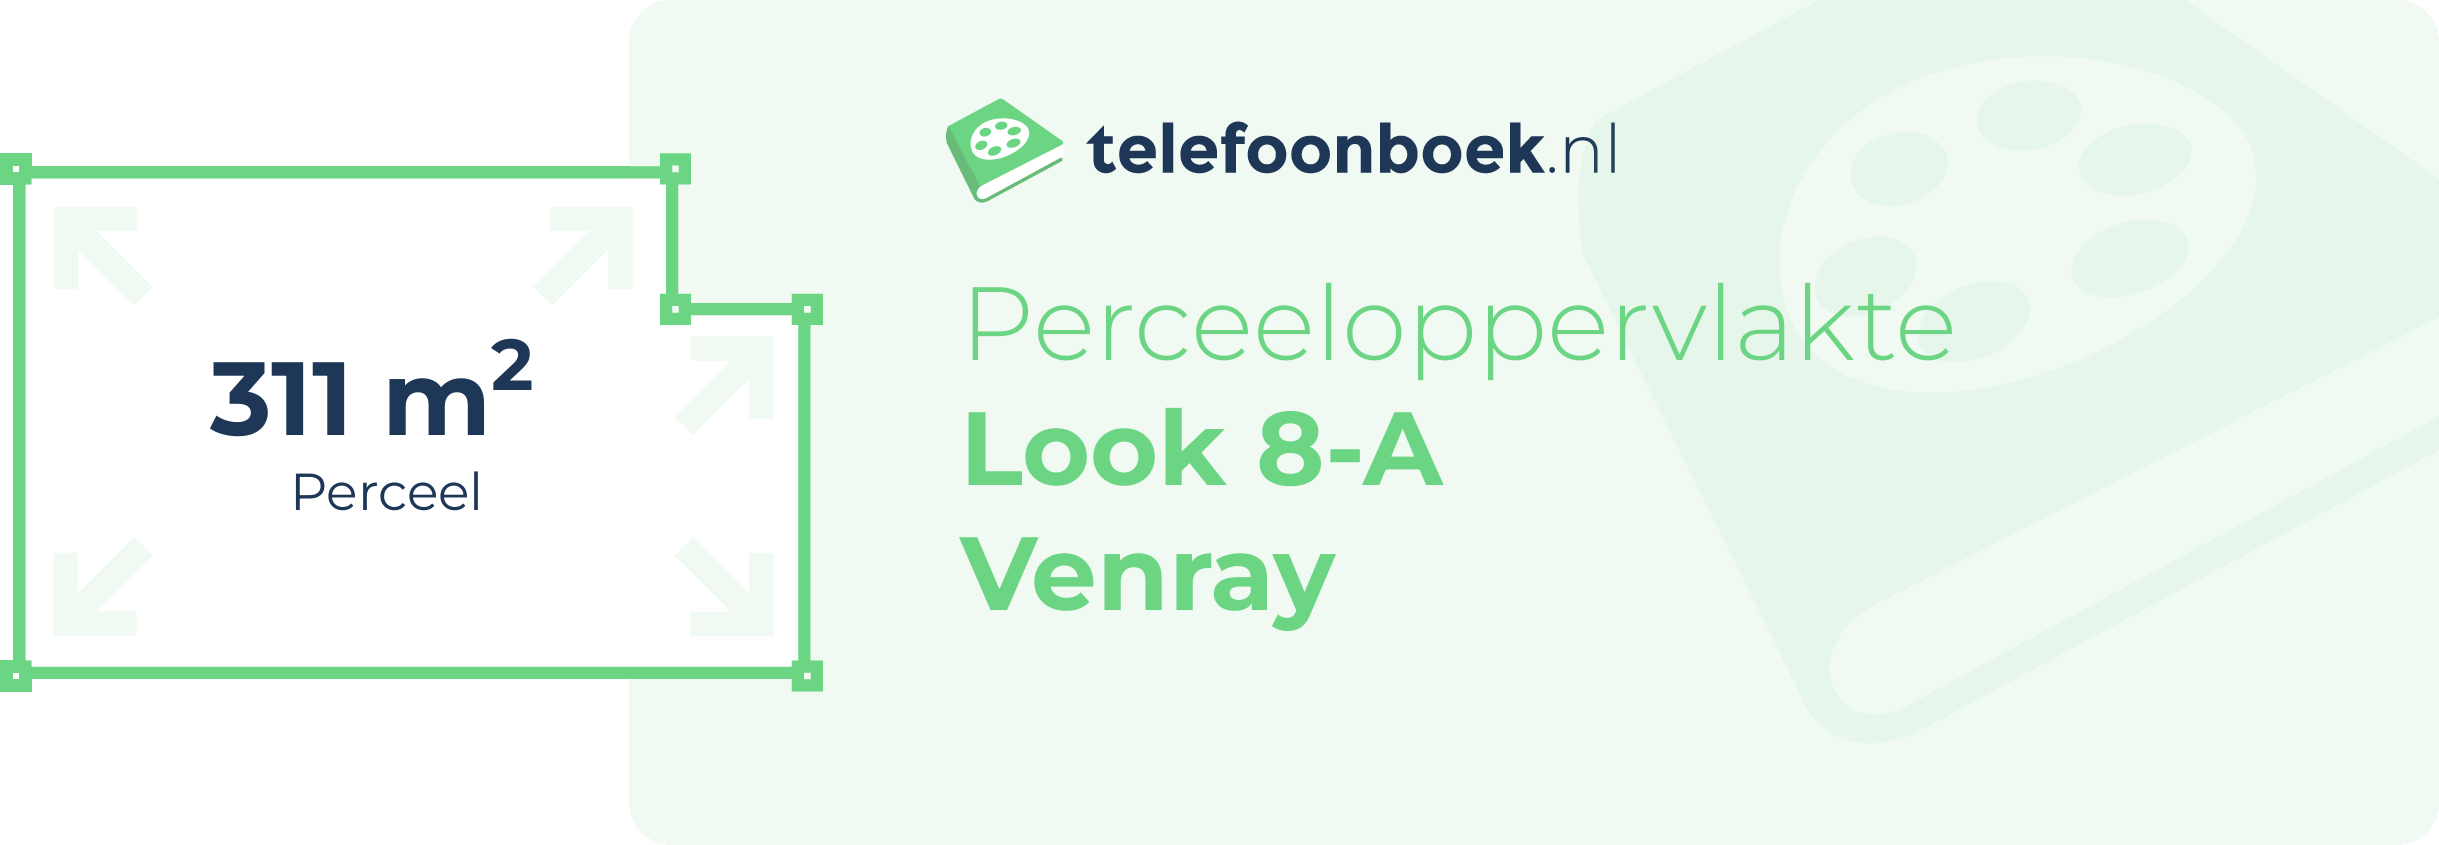 Perceeloppervlakte Look 8-A Venray